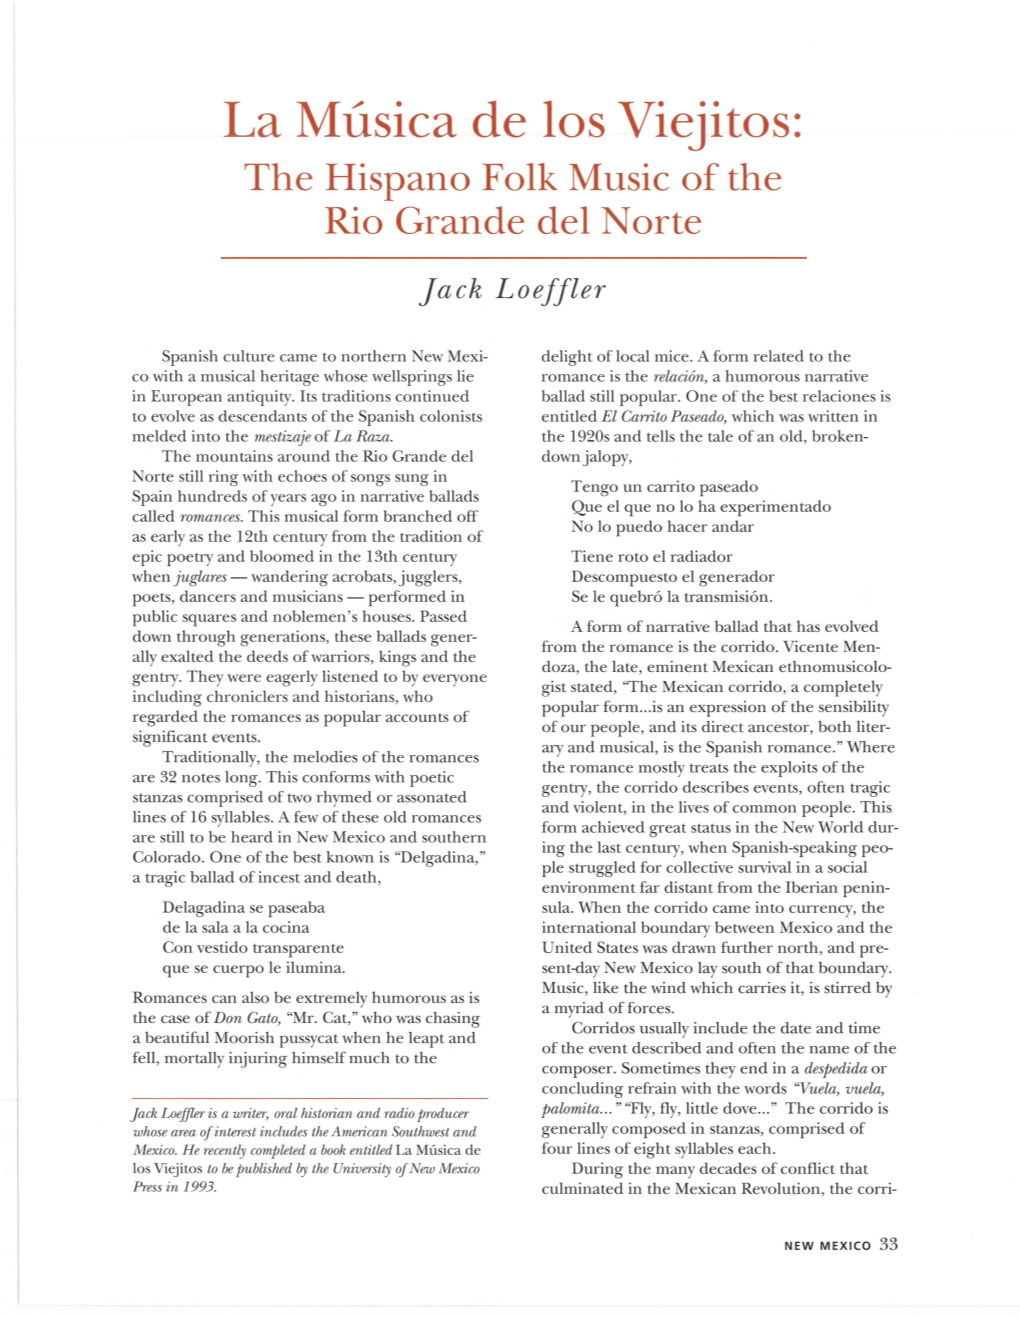 La Musica De Los Viejitos: the Hispano Folk Music of the Rio Grande Del Norte